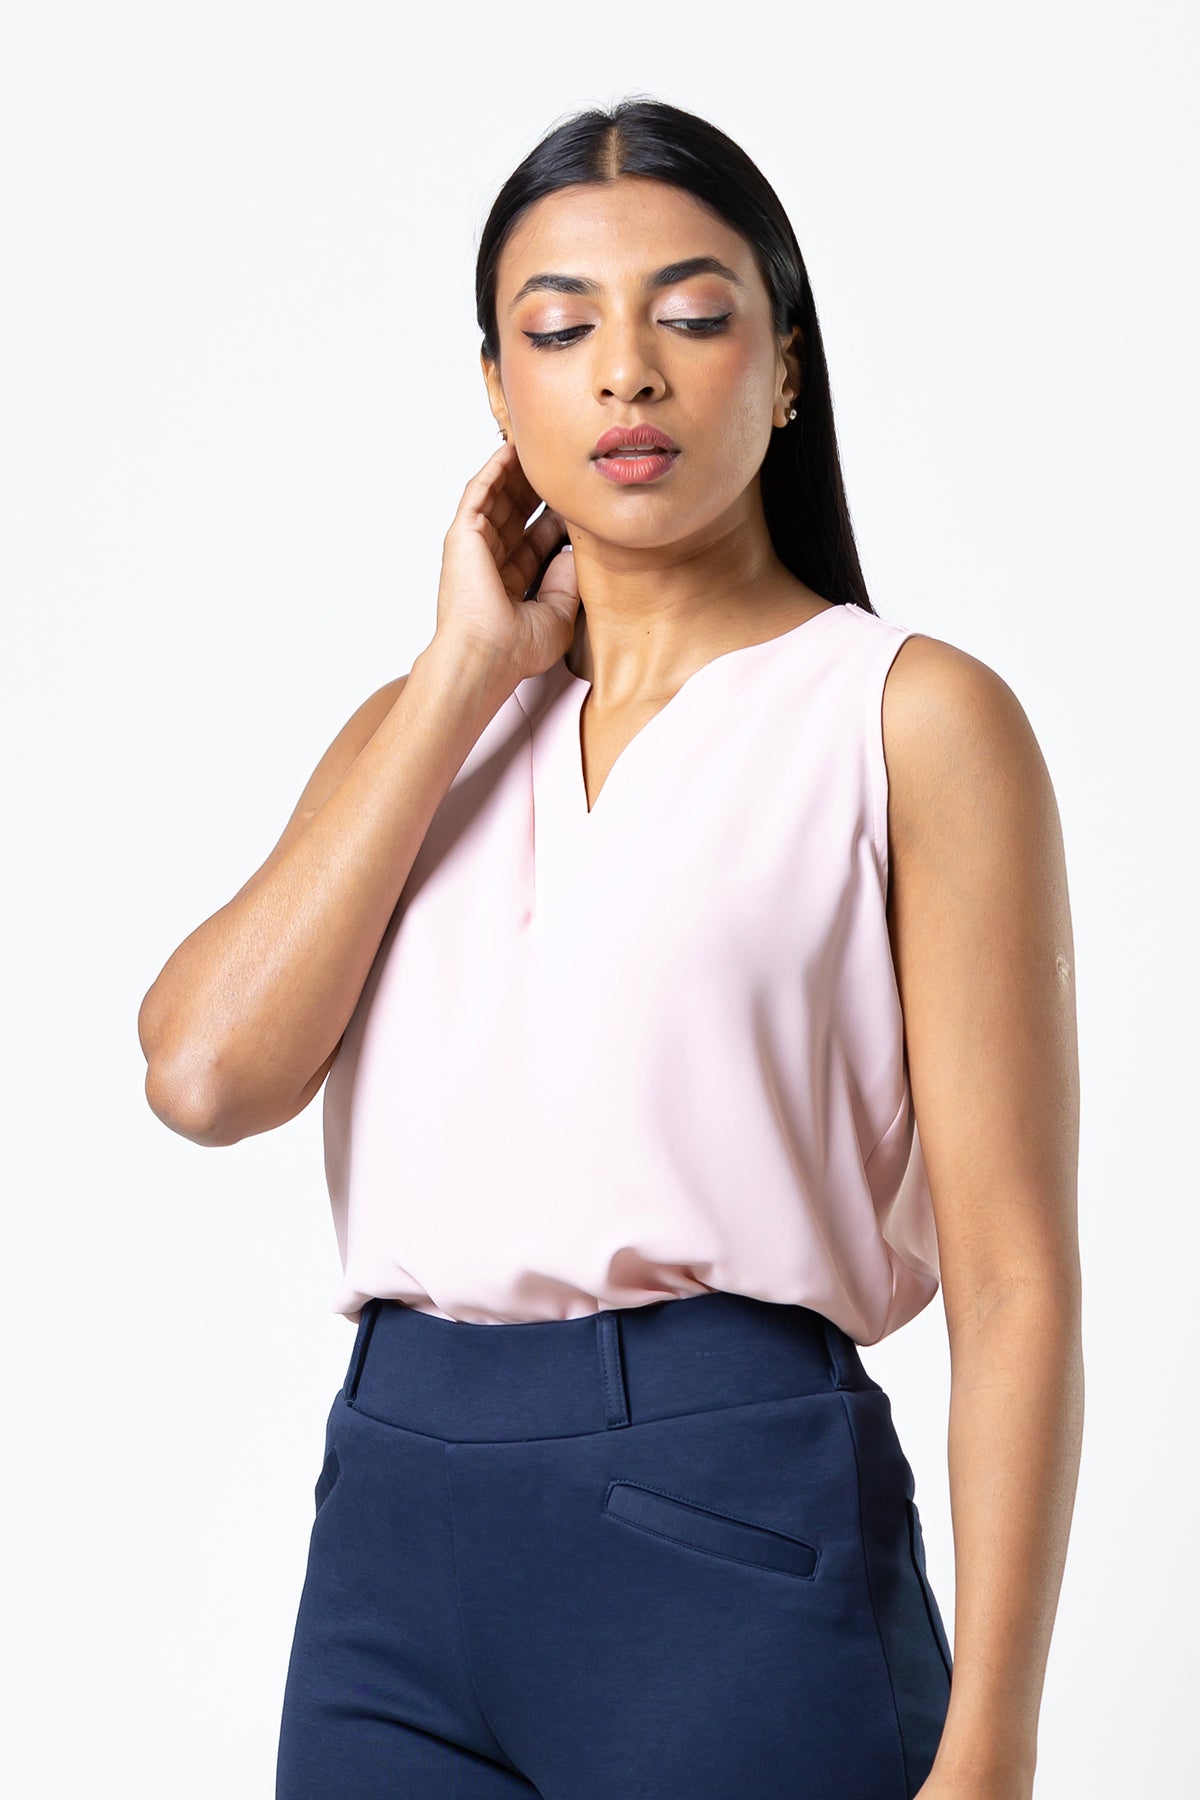 Envogue Women's Sleeve Less Plain Color Office Top